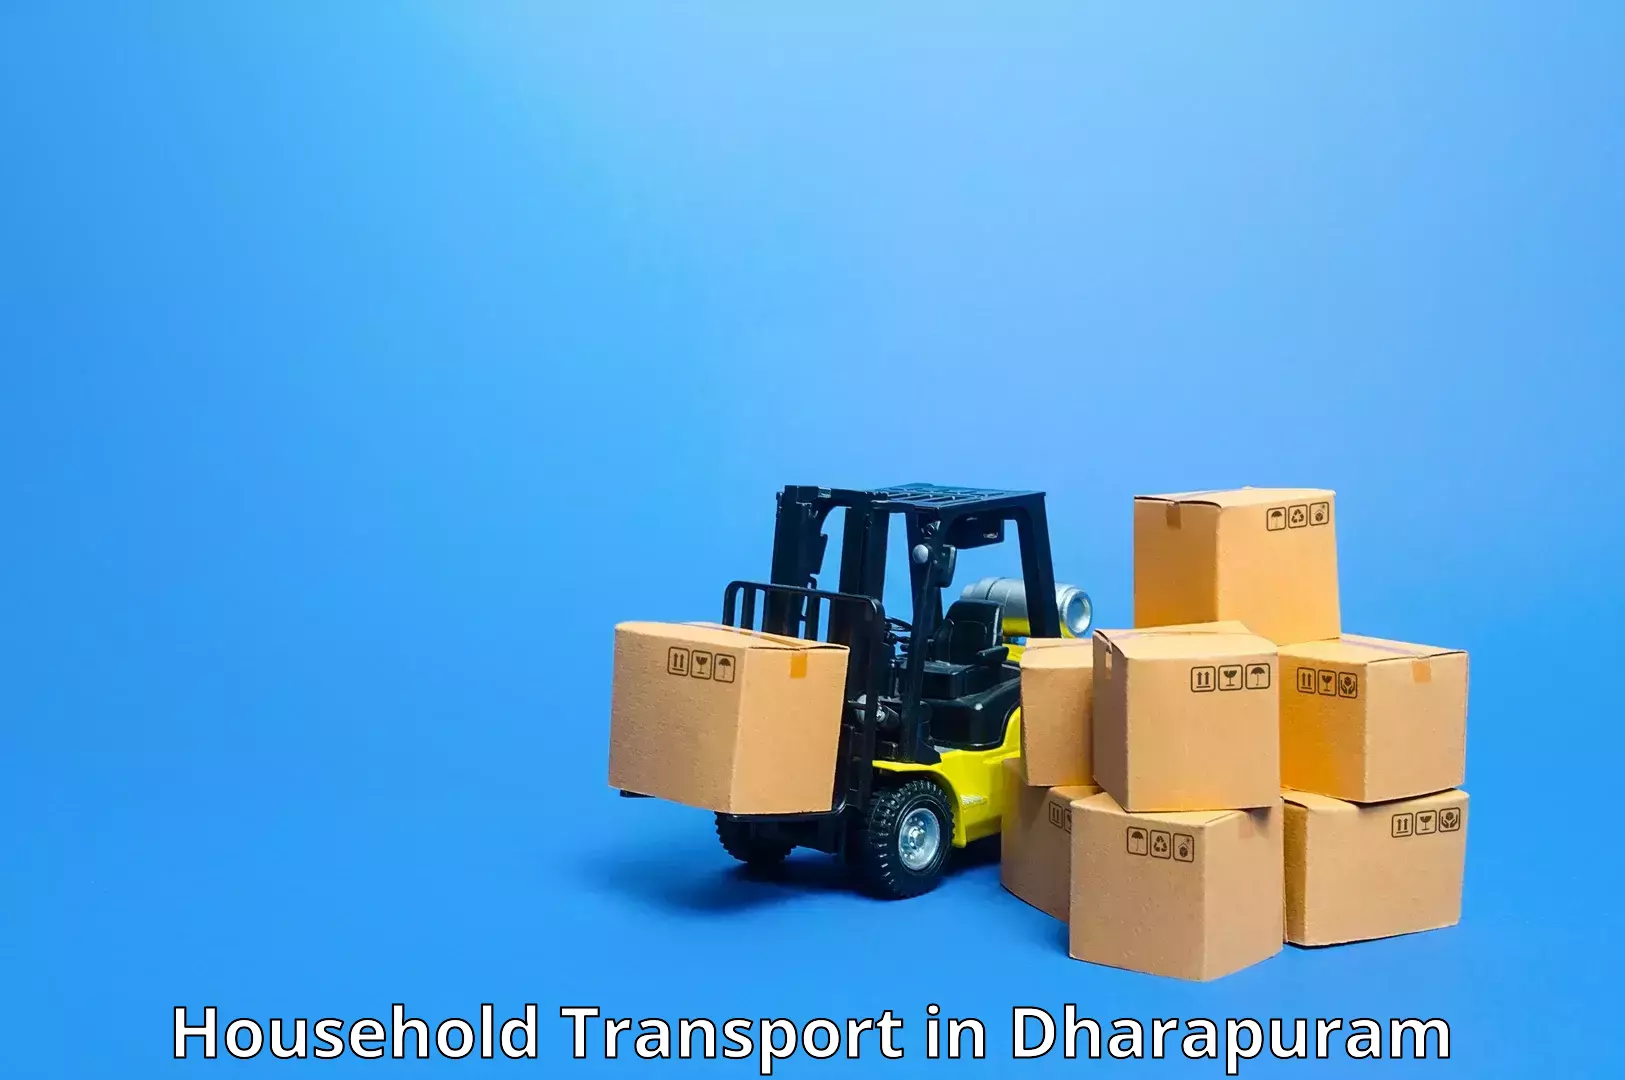 Quality household transport in Dharapuram